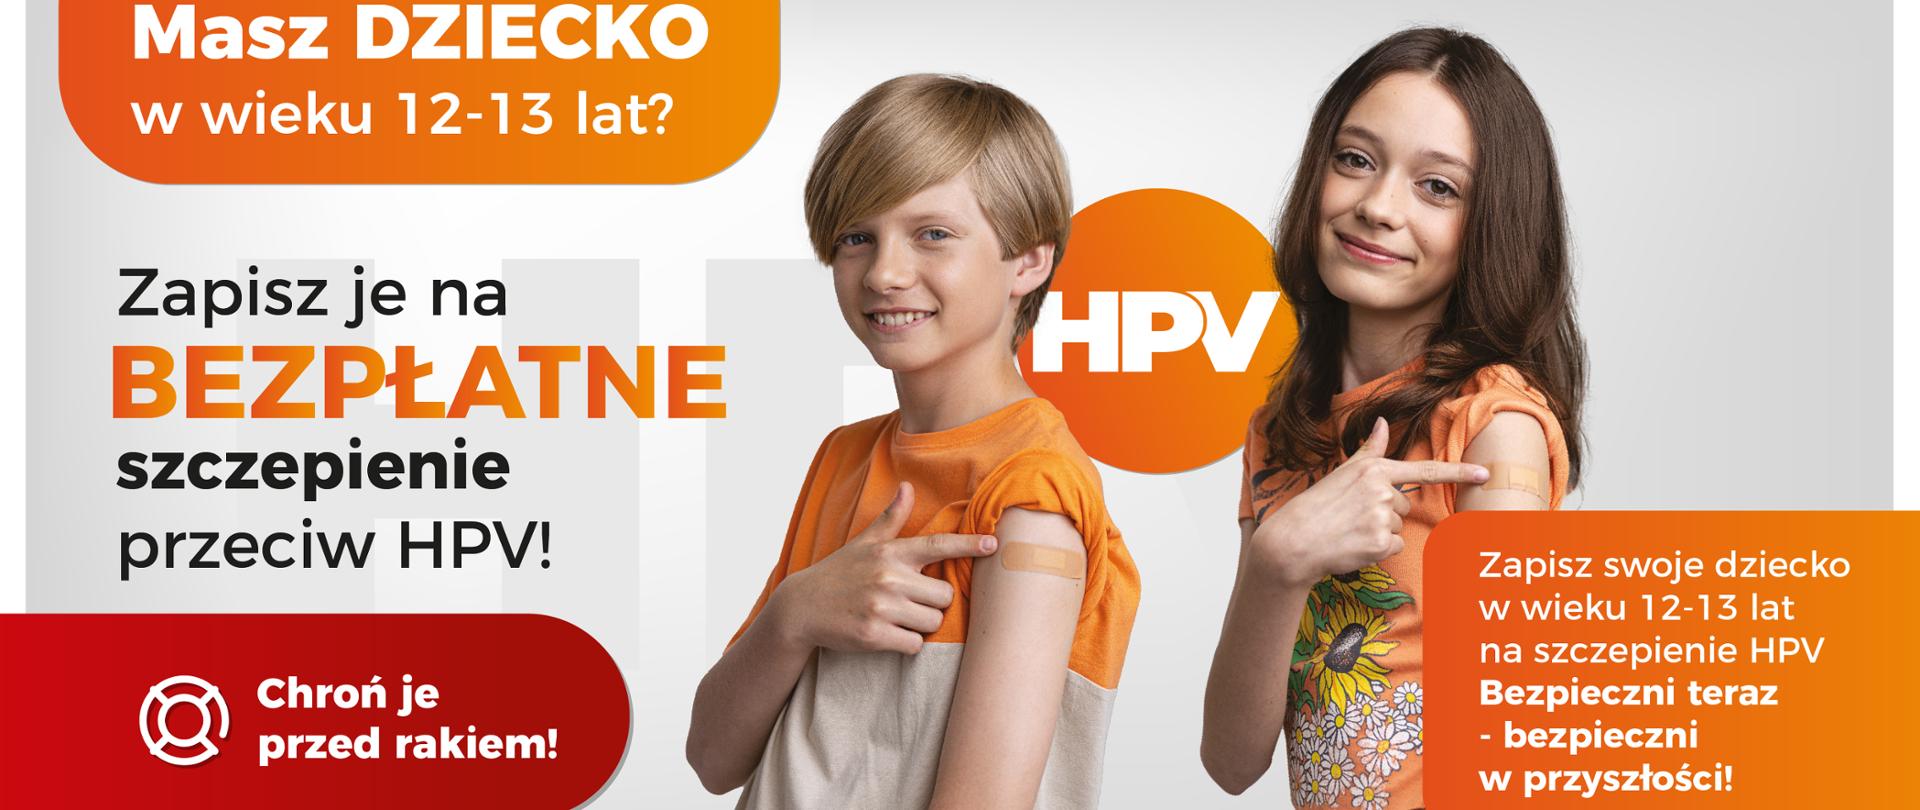 Plakat promujący szczepienia przeciw HPV